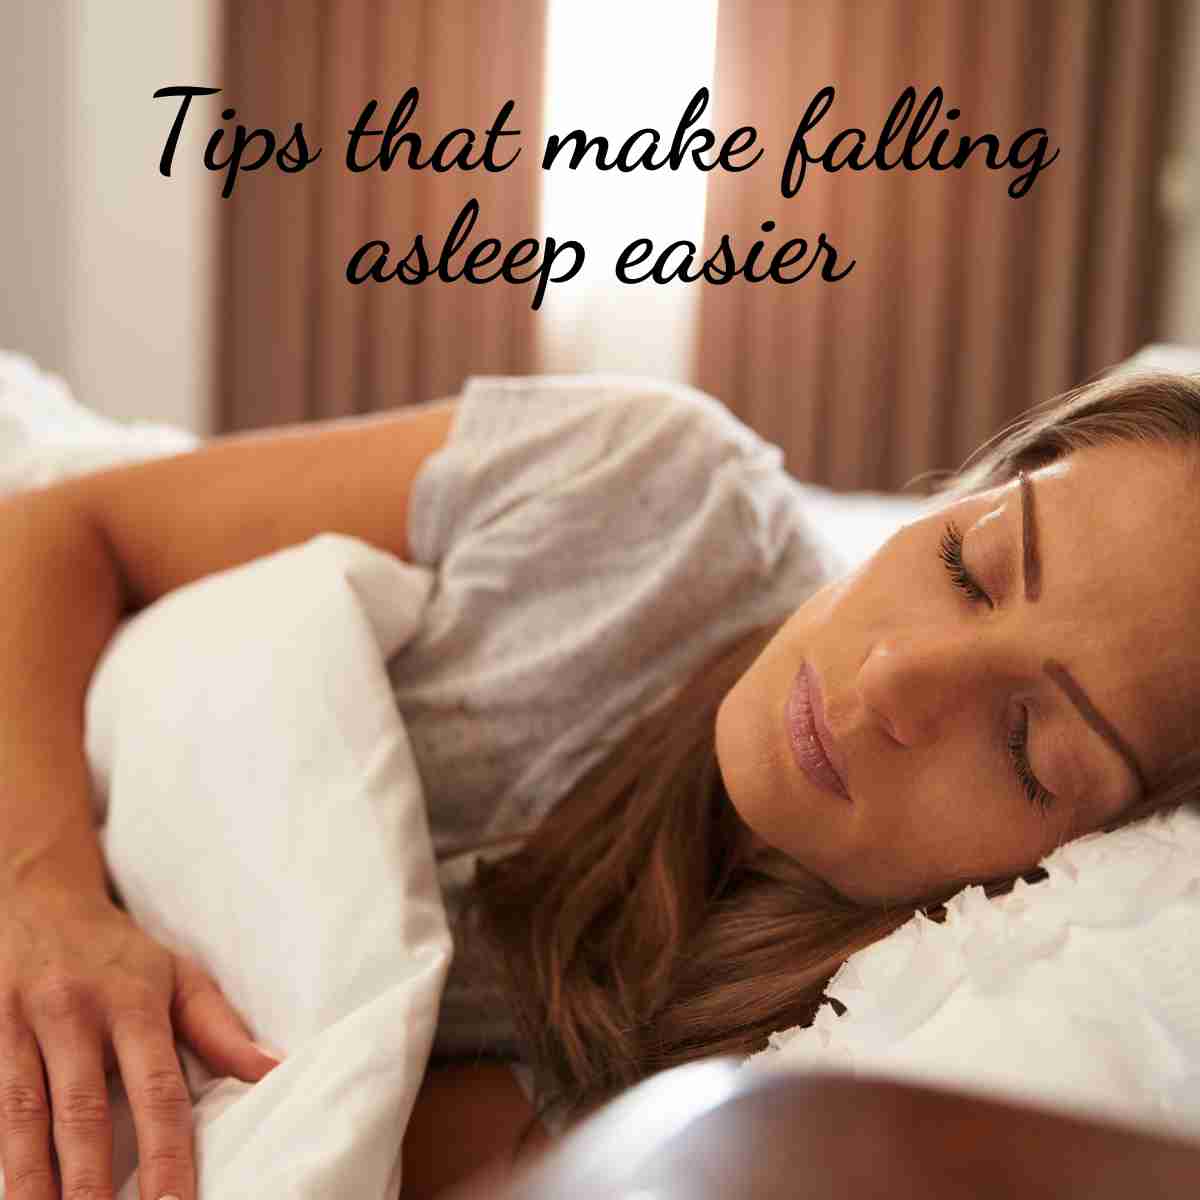 Tips for Easier Sleeping